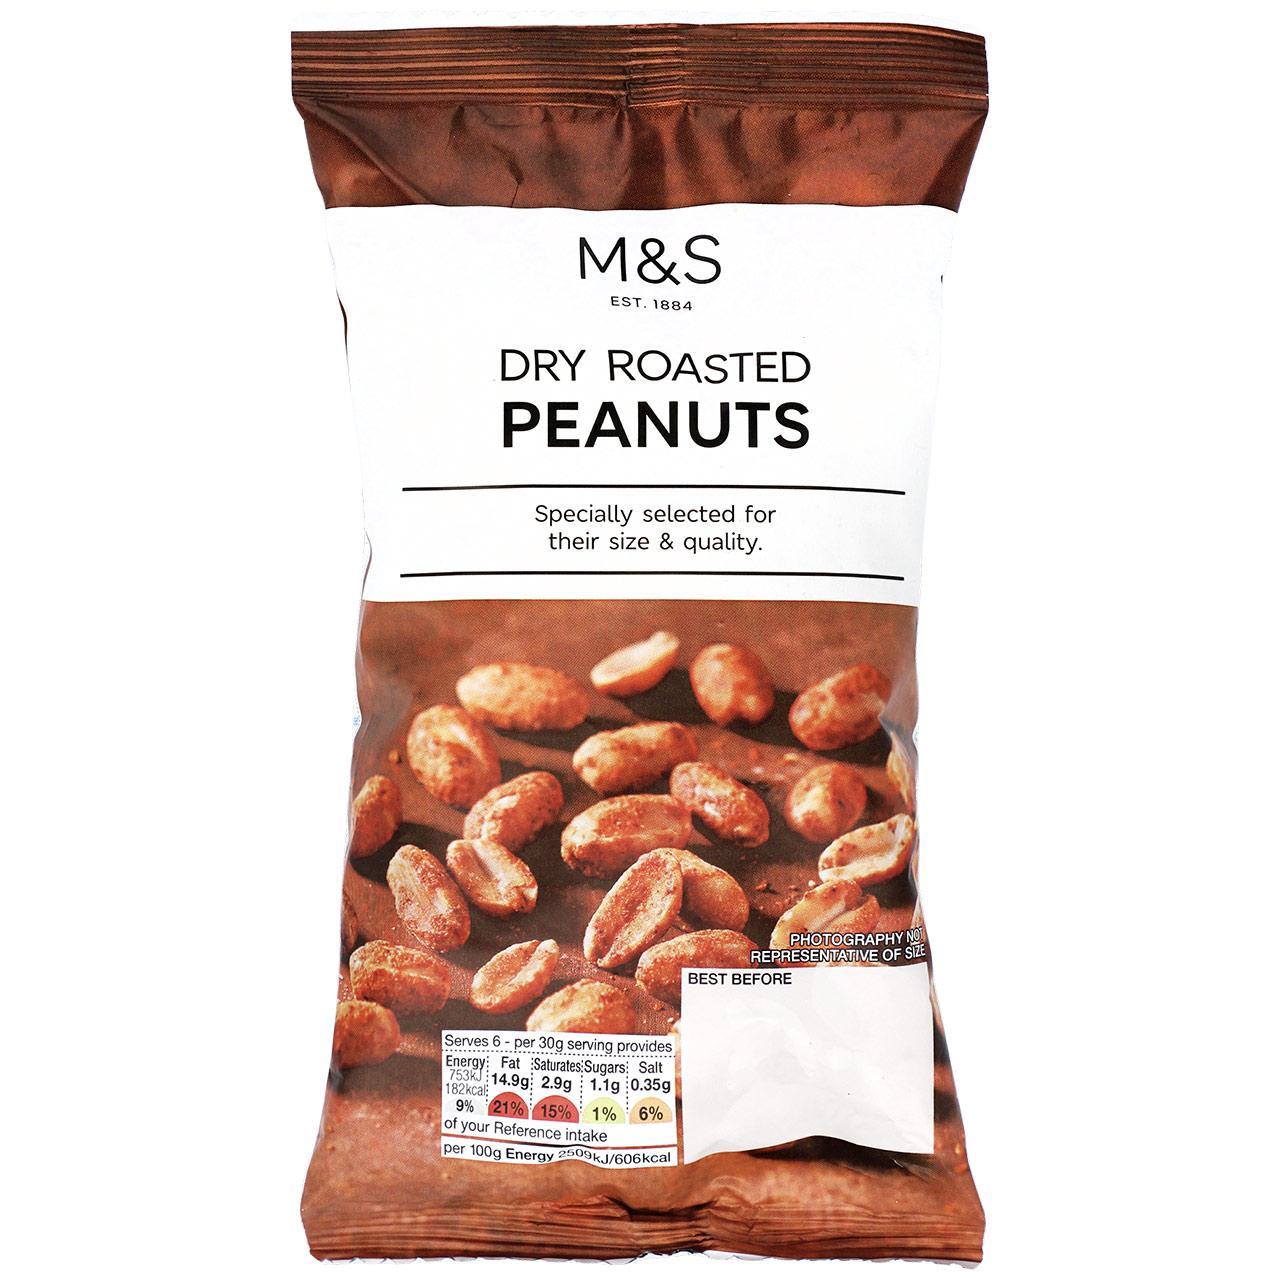 M&S Dry Roasted Peanuts